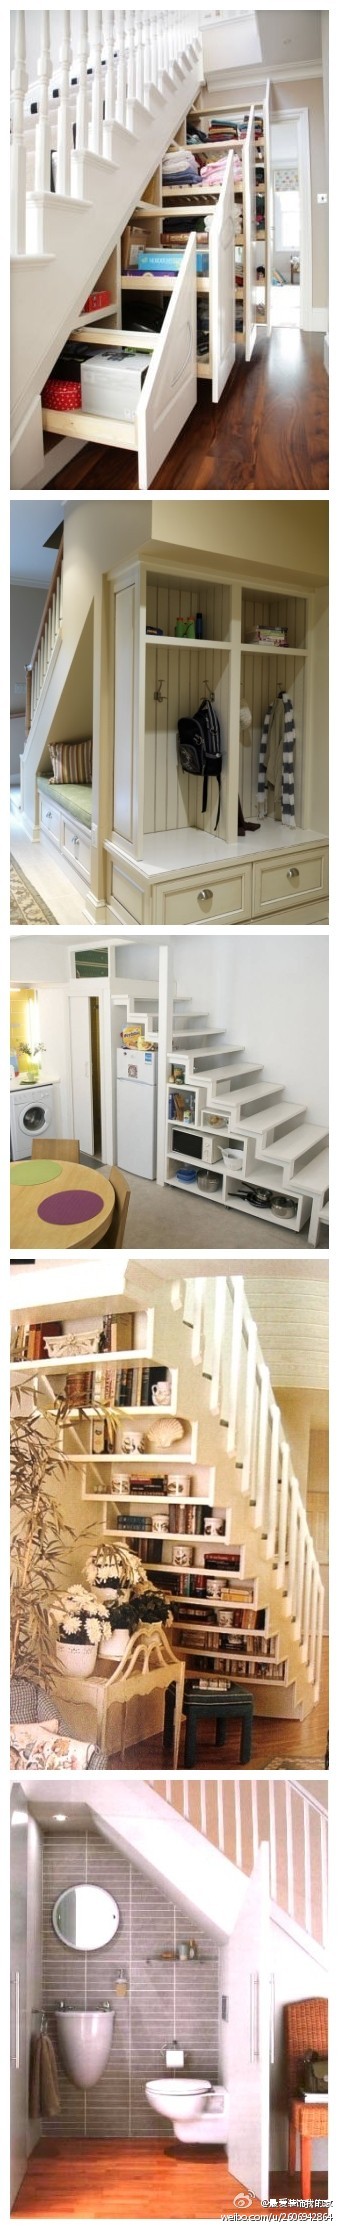 楼梯间的空间收纳和运用 XD 还可以做休息的小壁橱和洗手台。